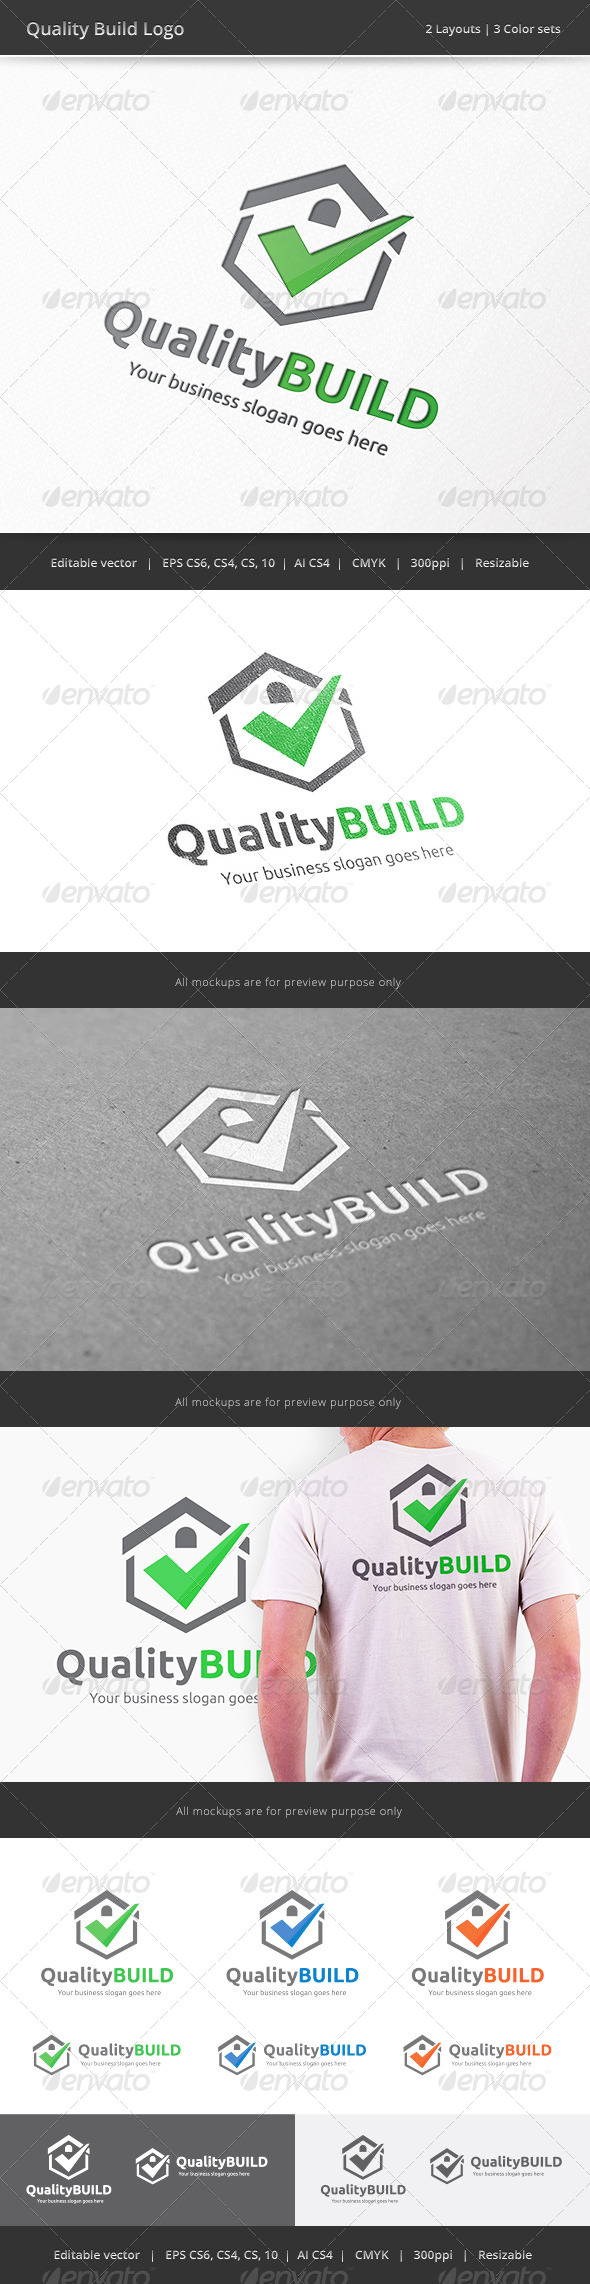 Quality Build House Logo